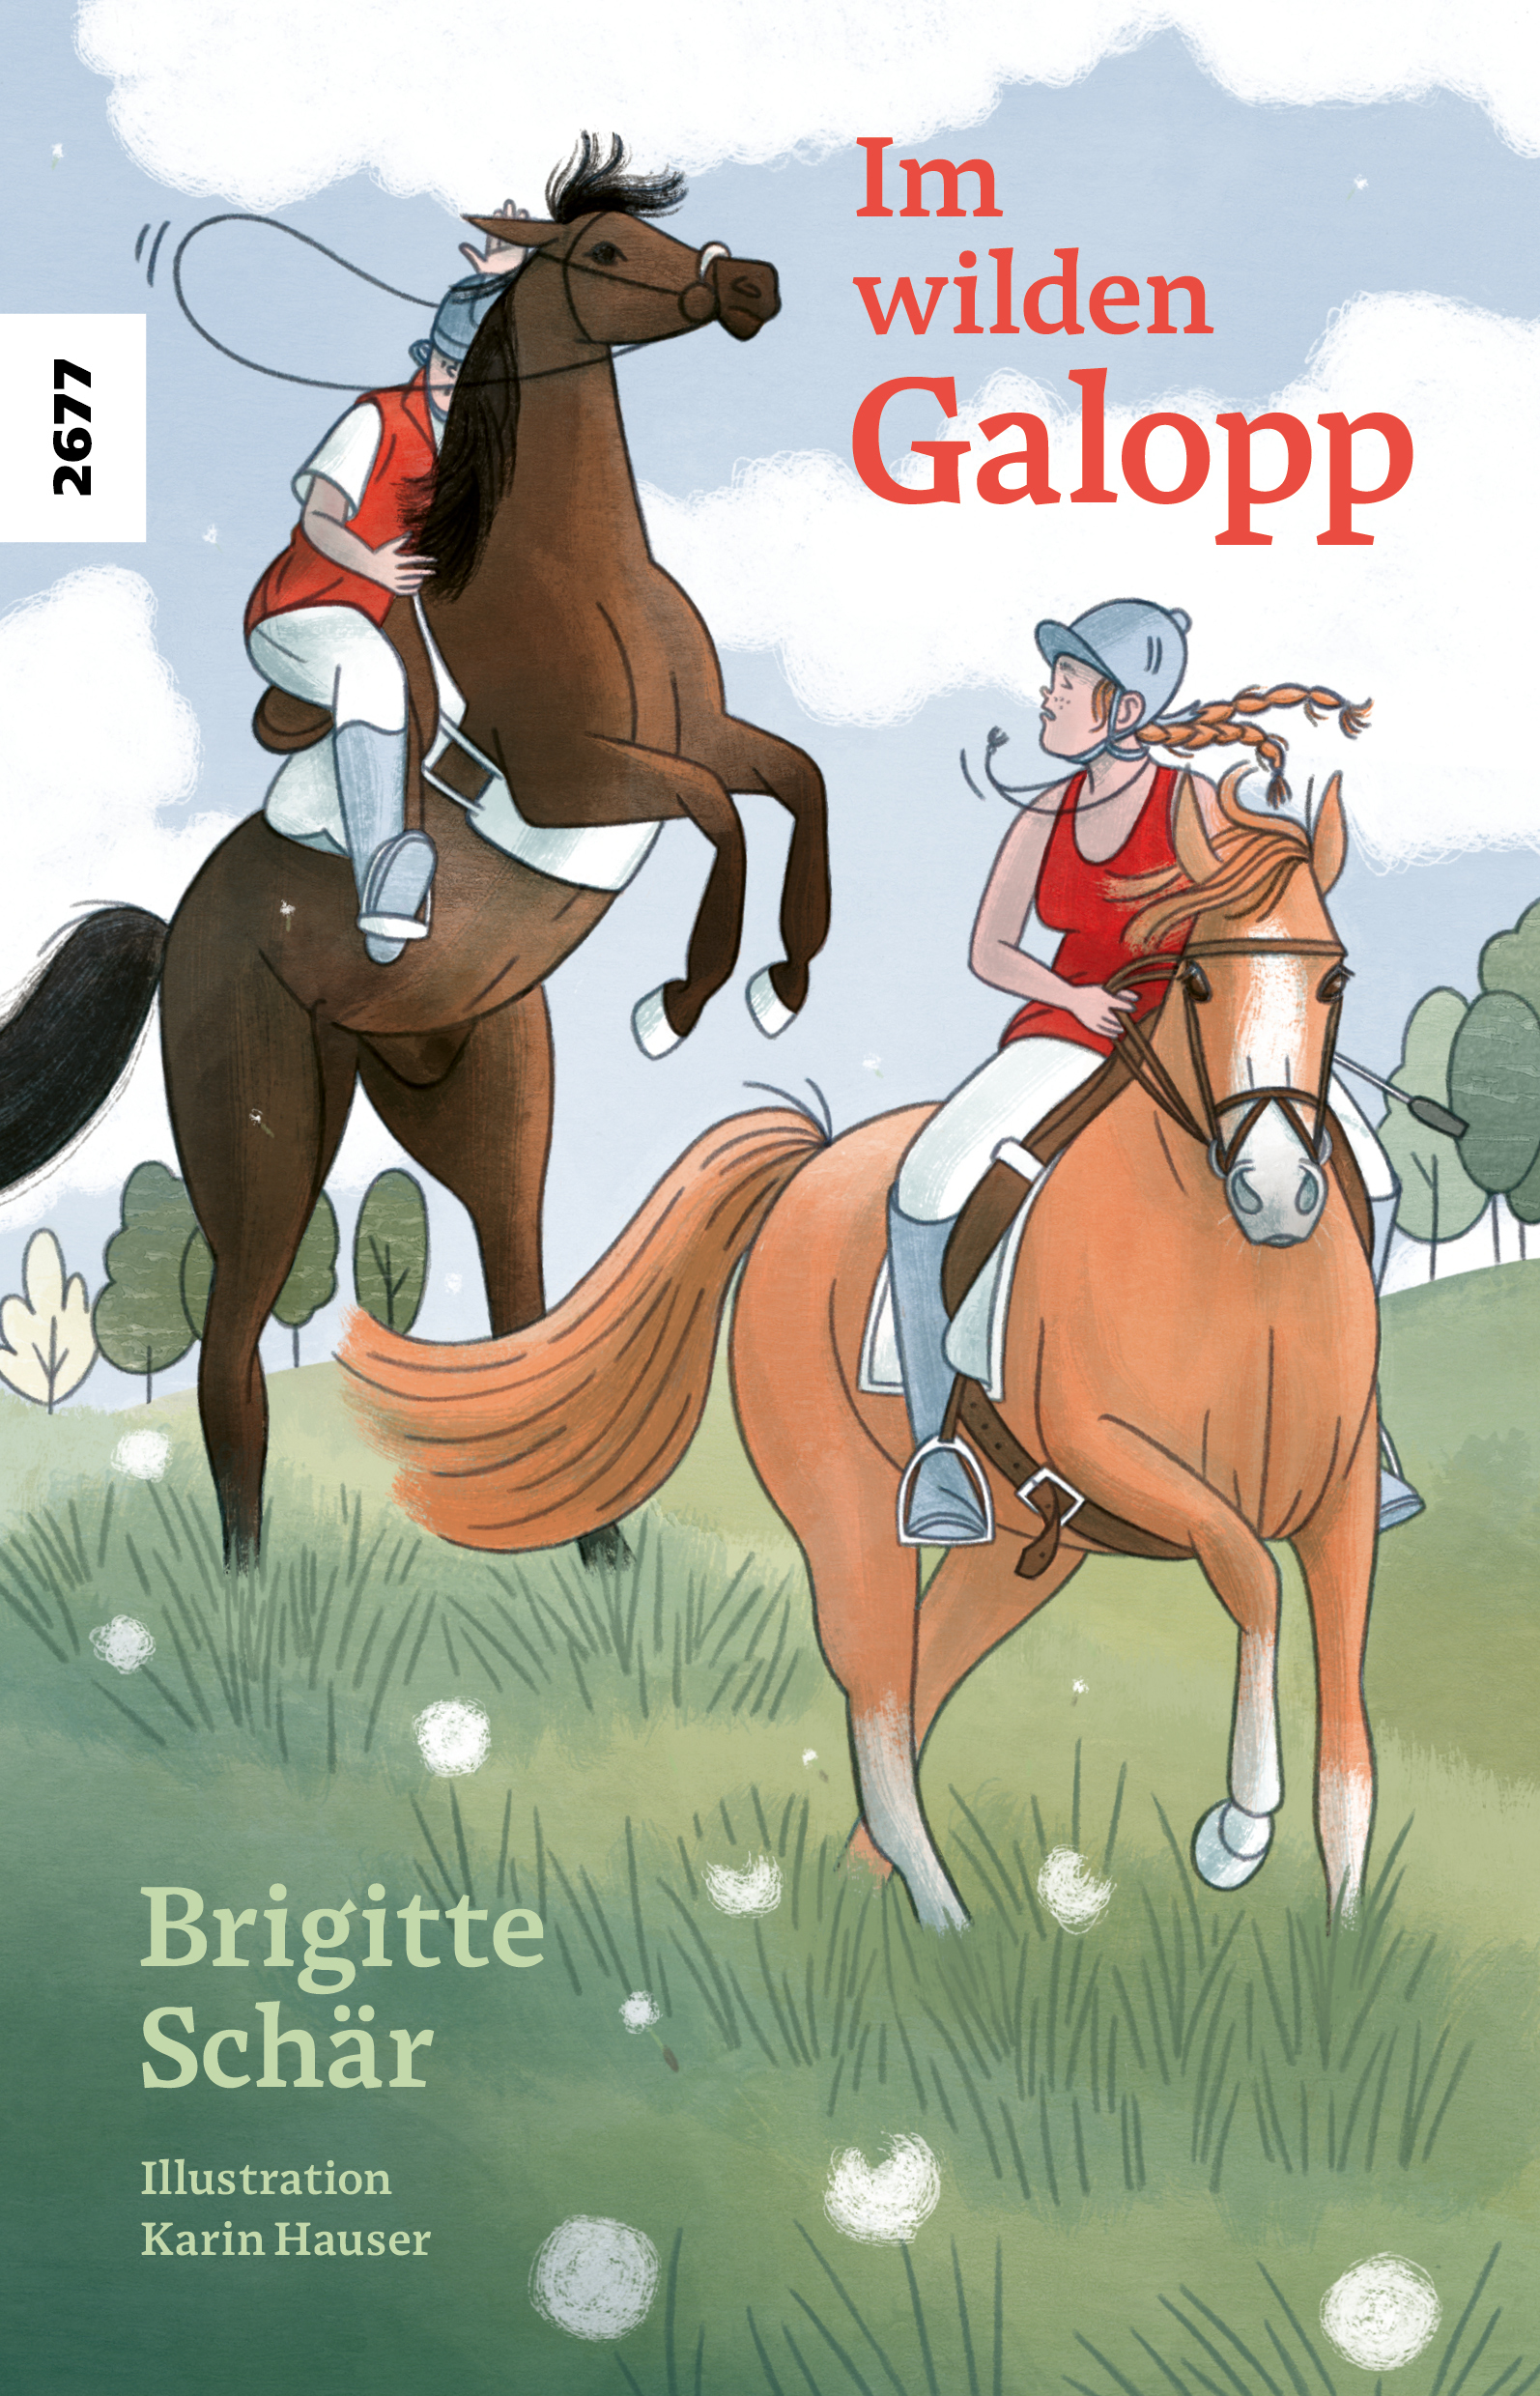 Im wilden Galopp, ein Jugendbuch von Brigitte Schaer, Illustration von Karin Hauser, SJW Verlag, Pferdegeschichte